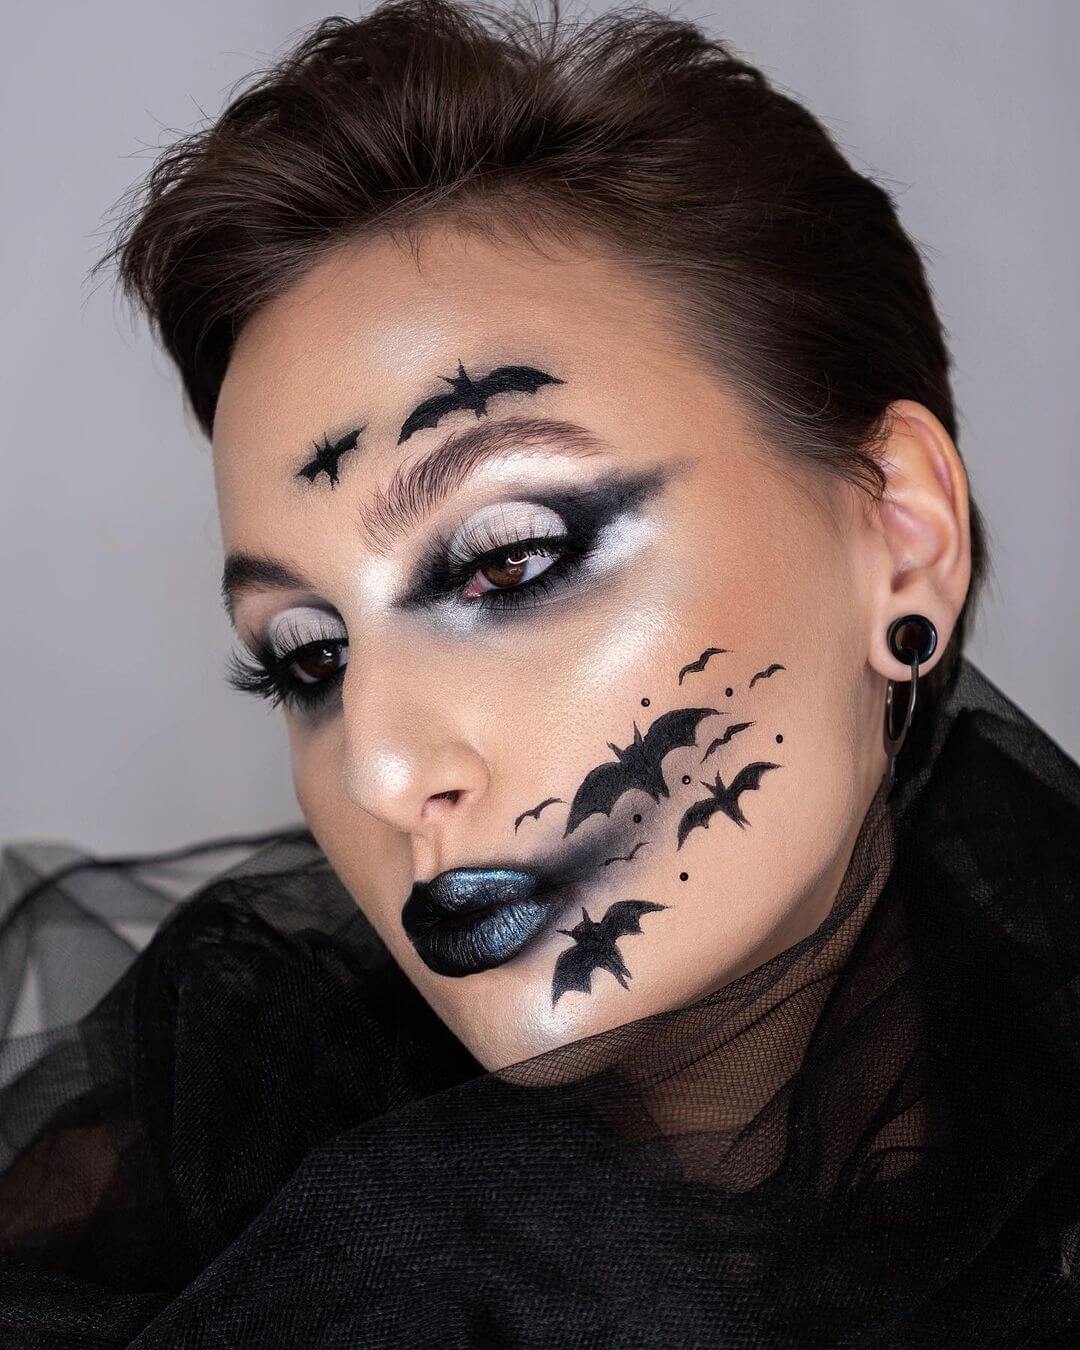 Women's Halloween Makeup Bats will complete your Halloween makeup